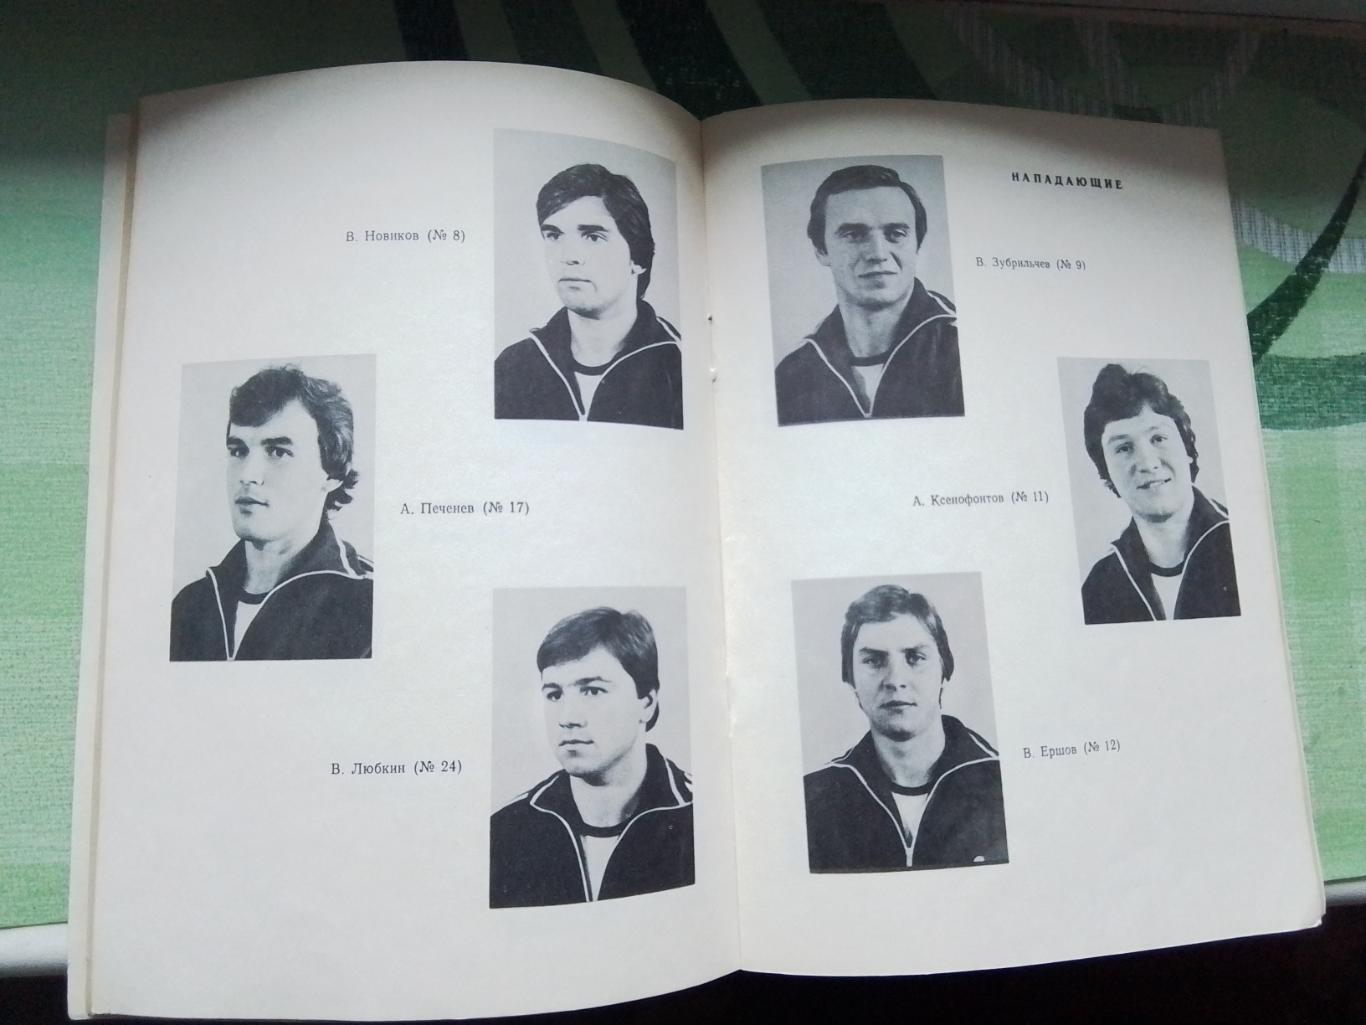 Календарь справочник Харьков 1984 - 1985 2